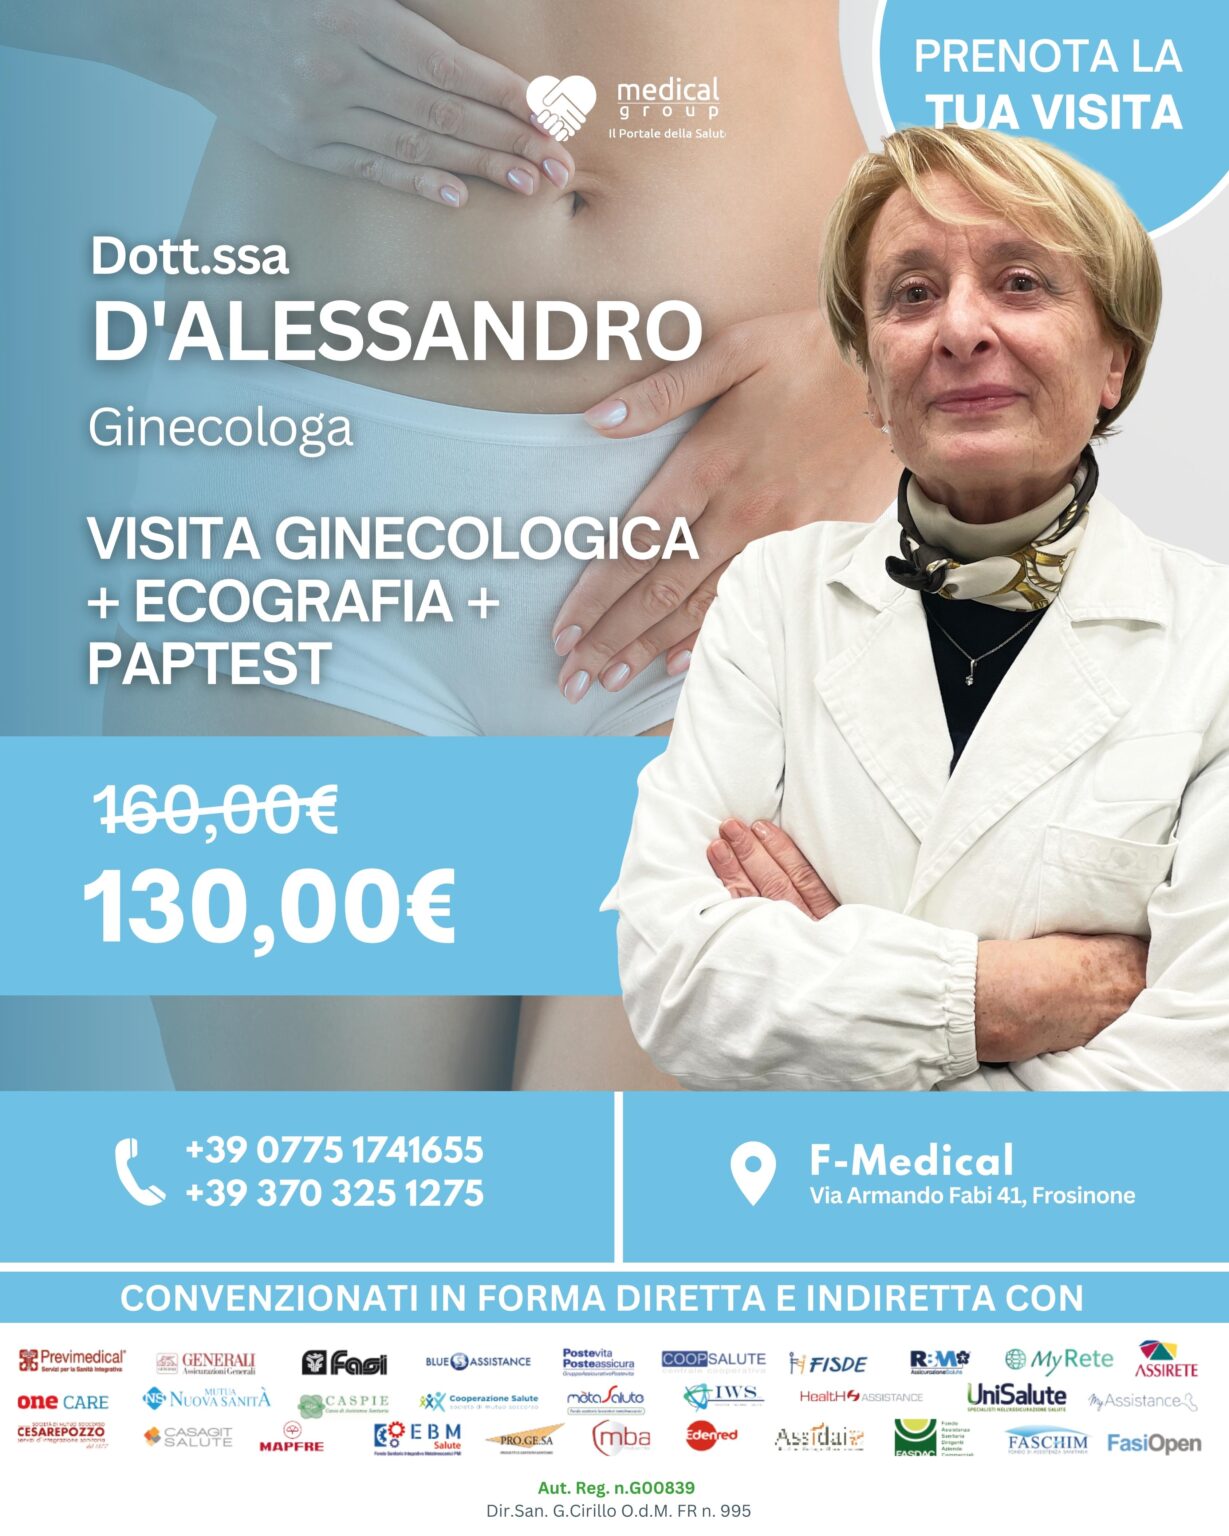 Tariffa del Mese-Poliambulatorio-Ginecologia-Dotto.ssa Maria D'alessandro nel F-Medical Group di Frosinone